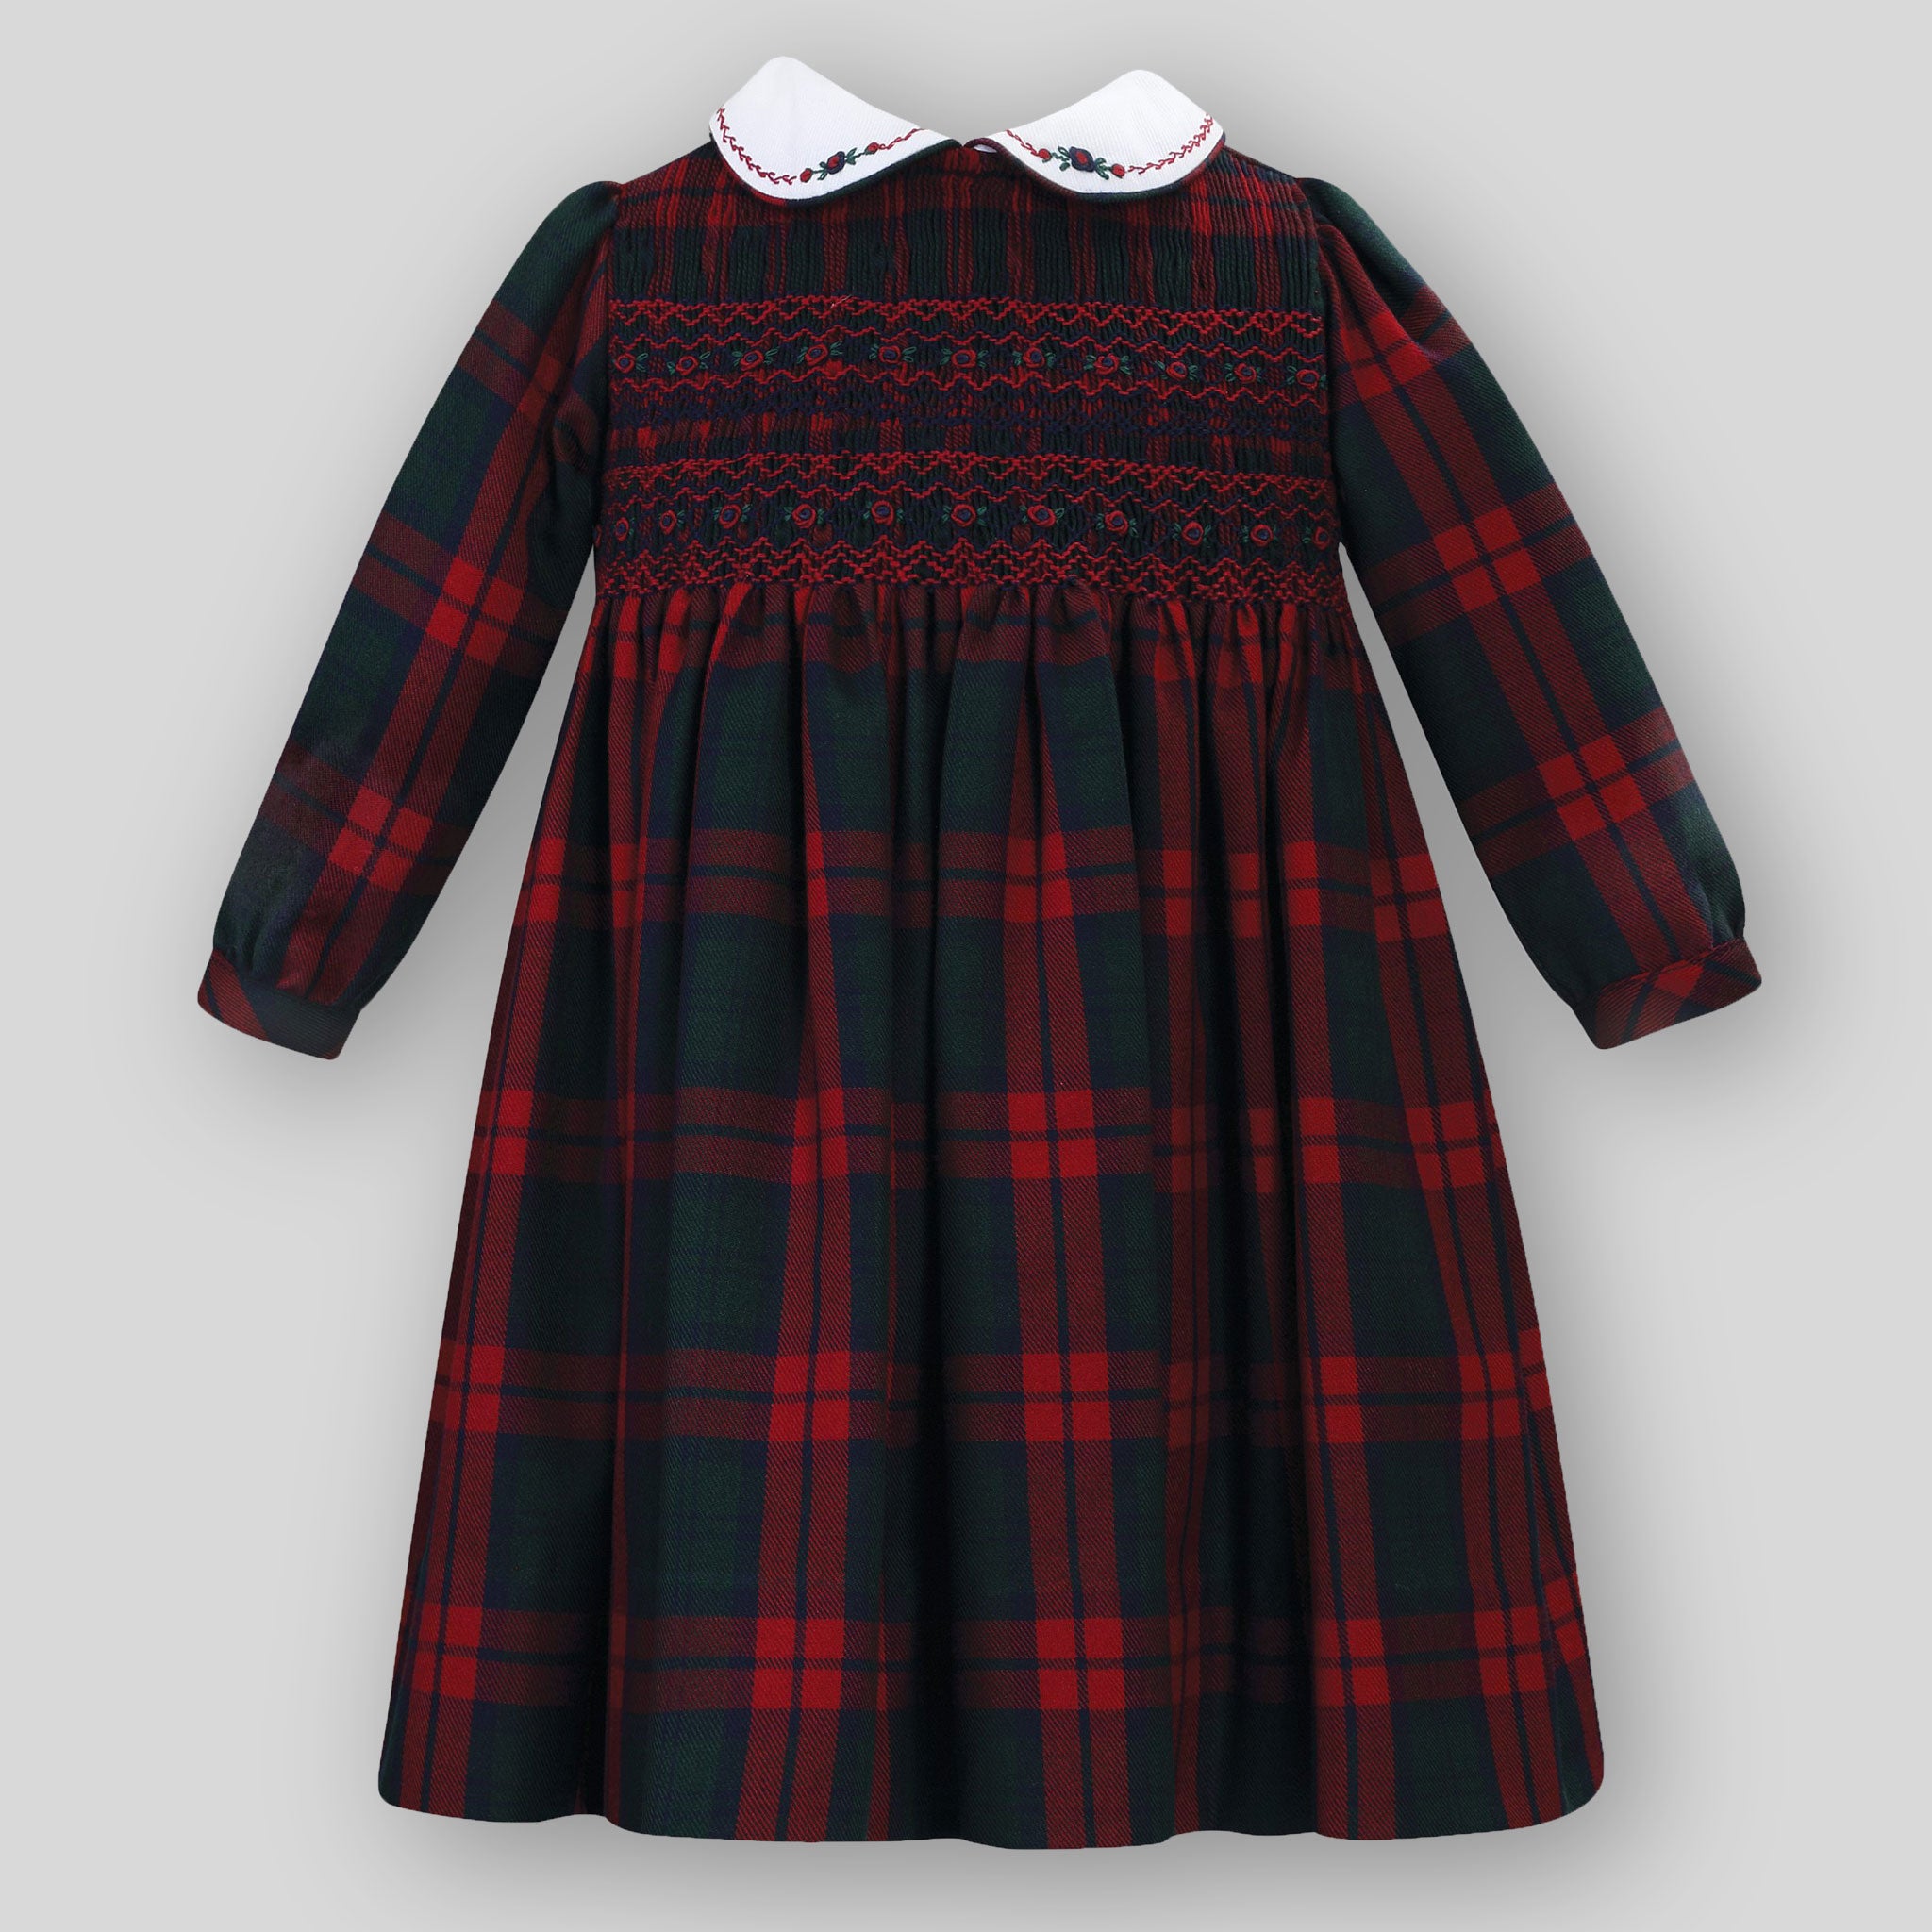 Traditional Girls Tartan Dress with Smocking - Sarah Louise 013137